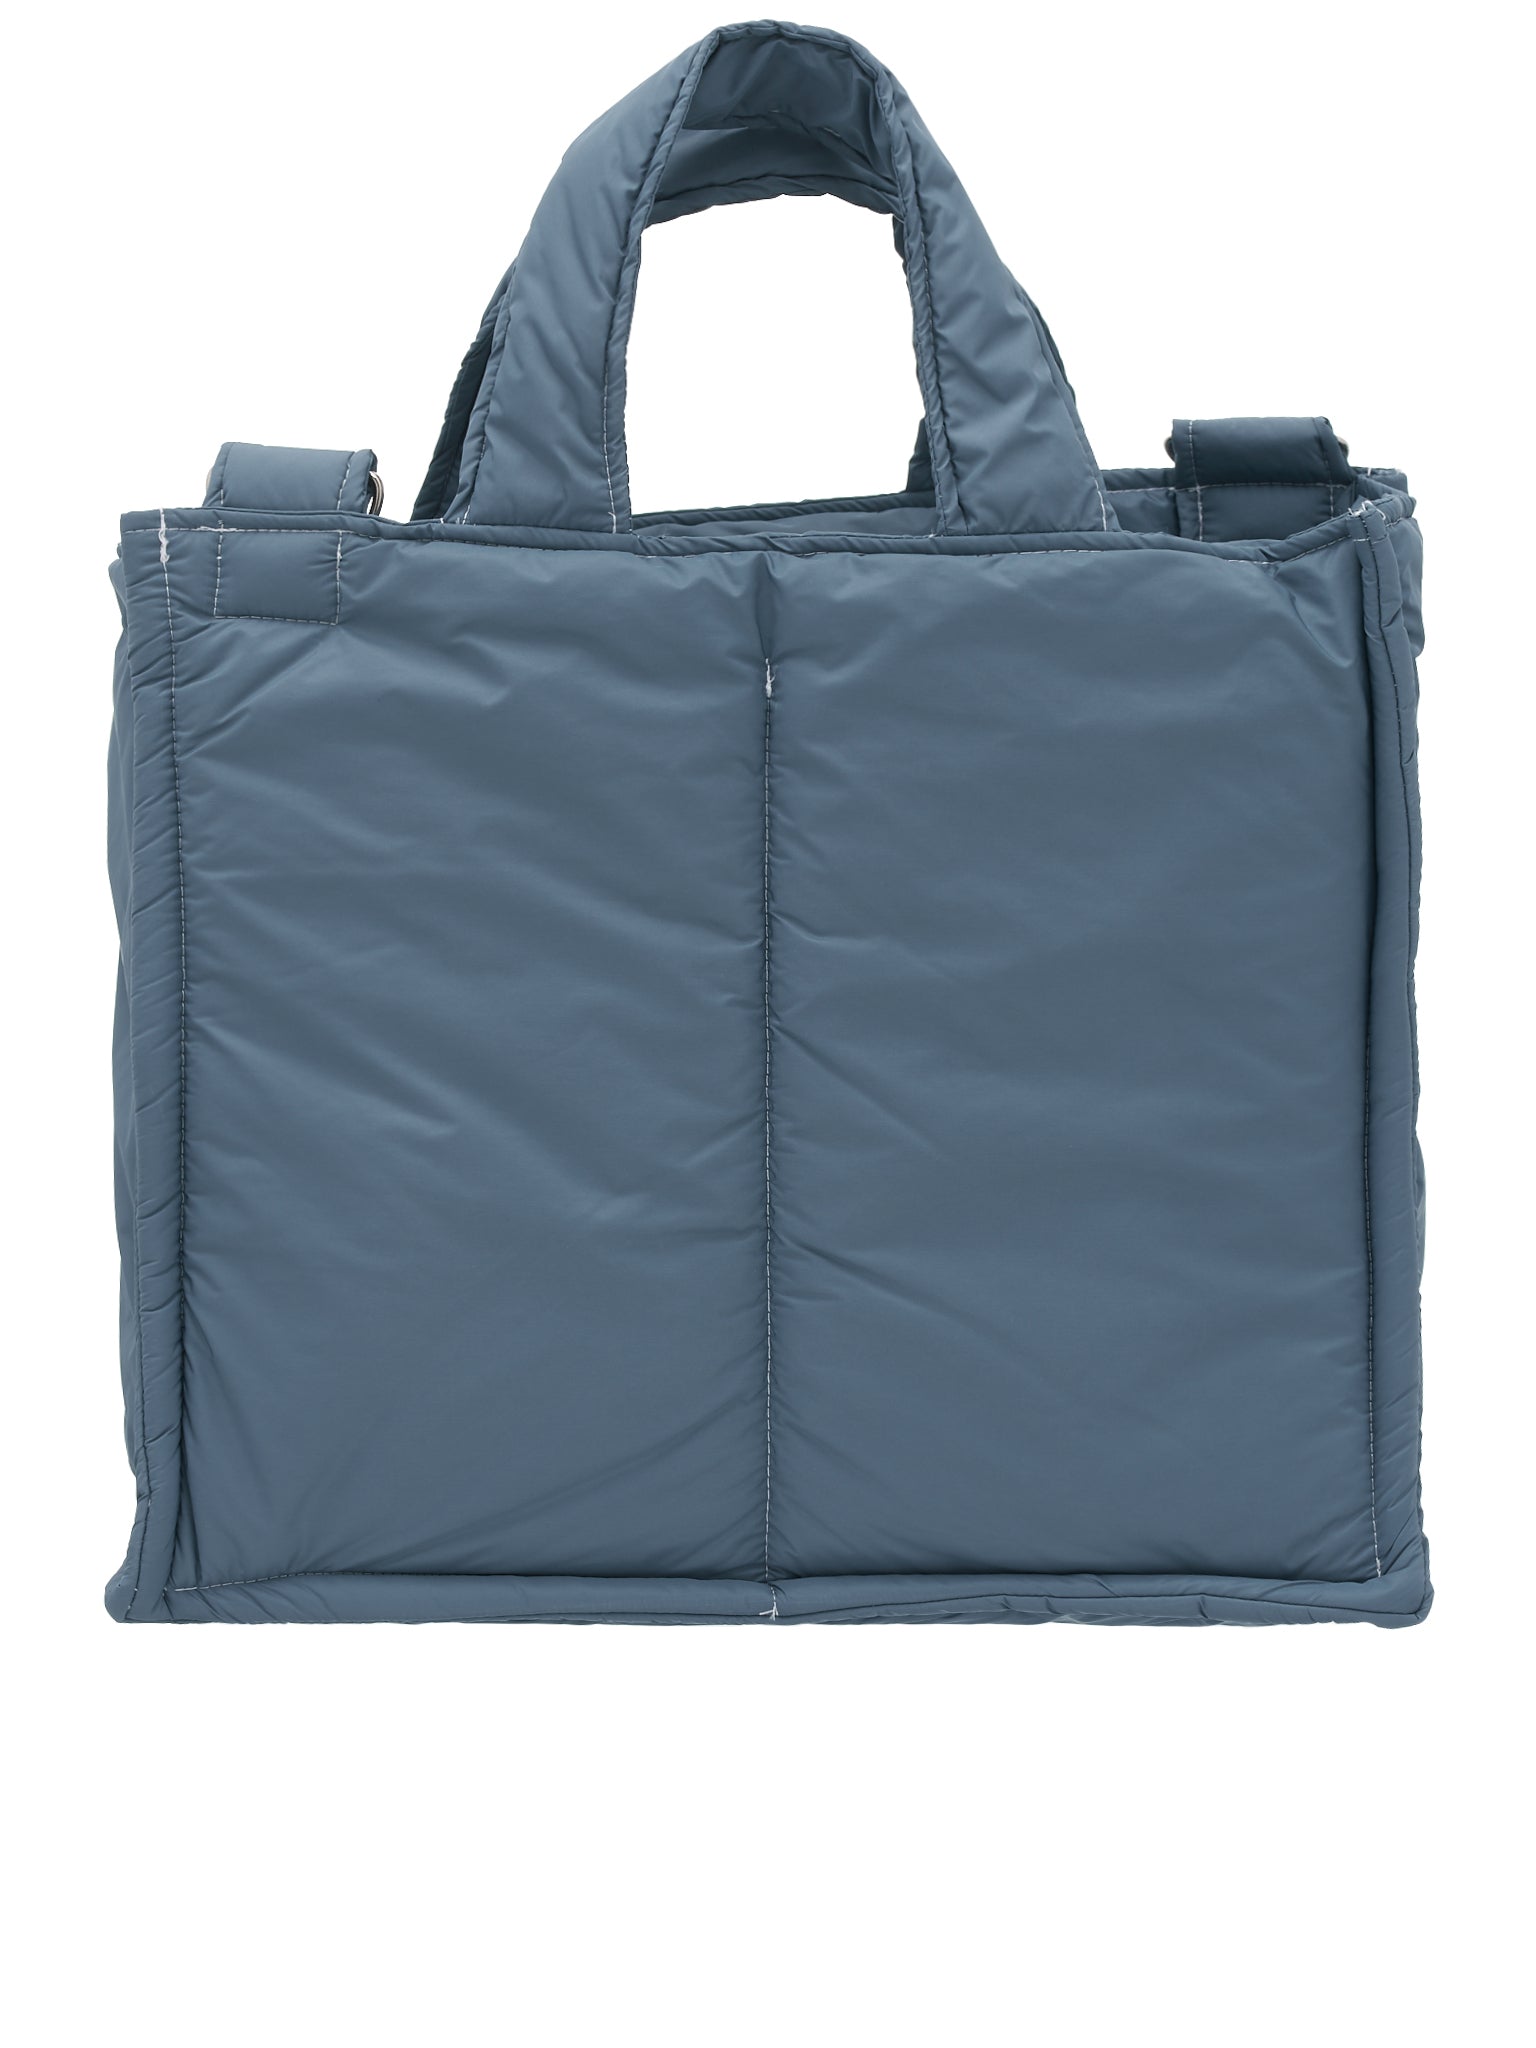 Puffed Shopper Bag (14-11-01-01-BLUE)